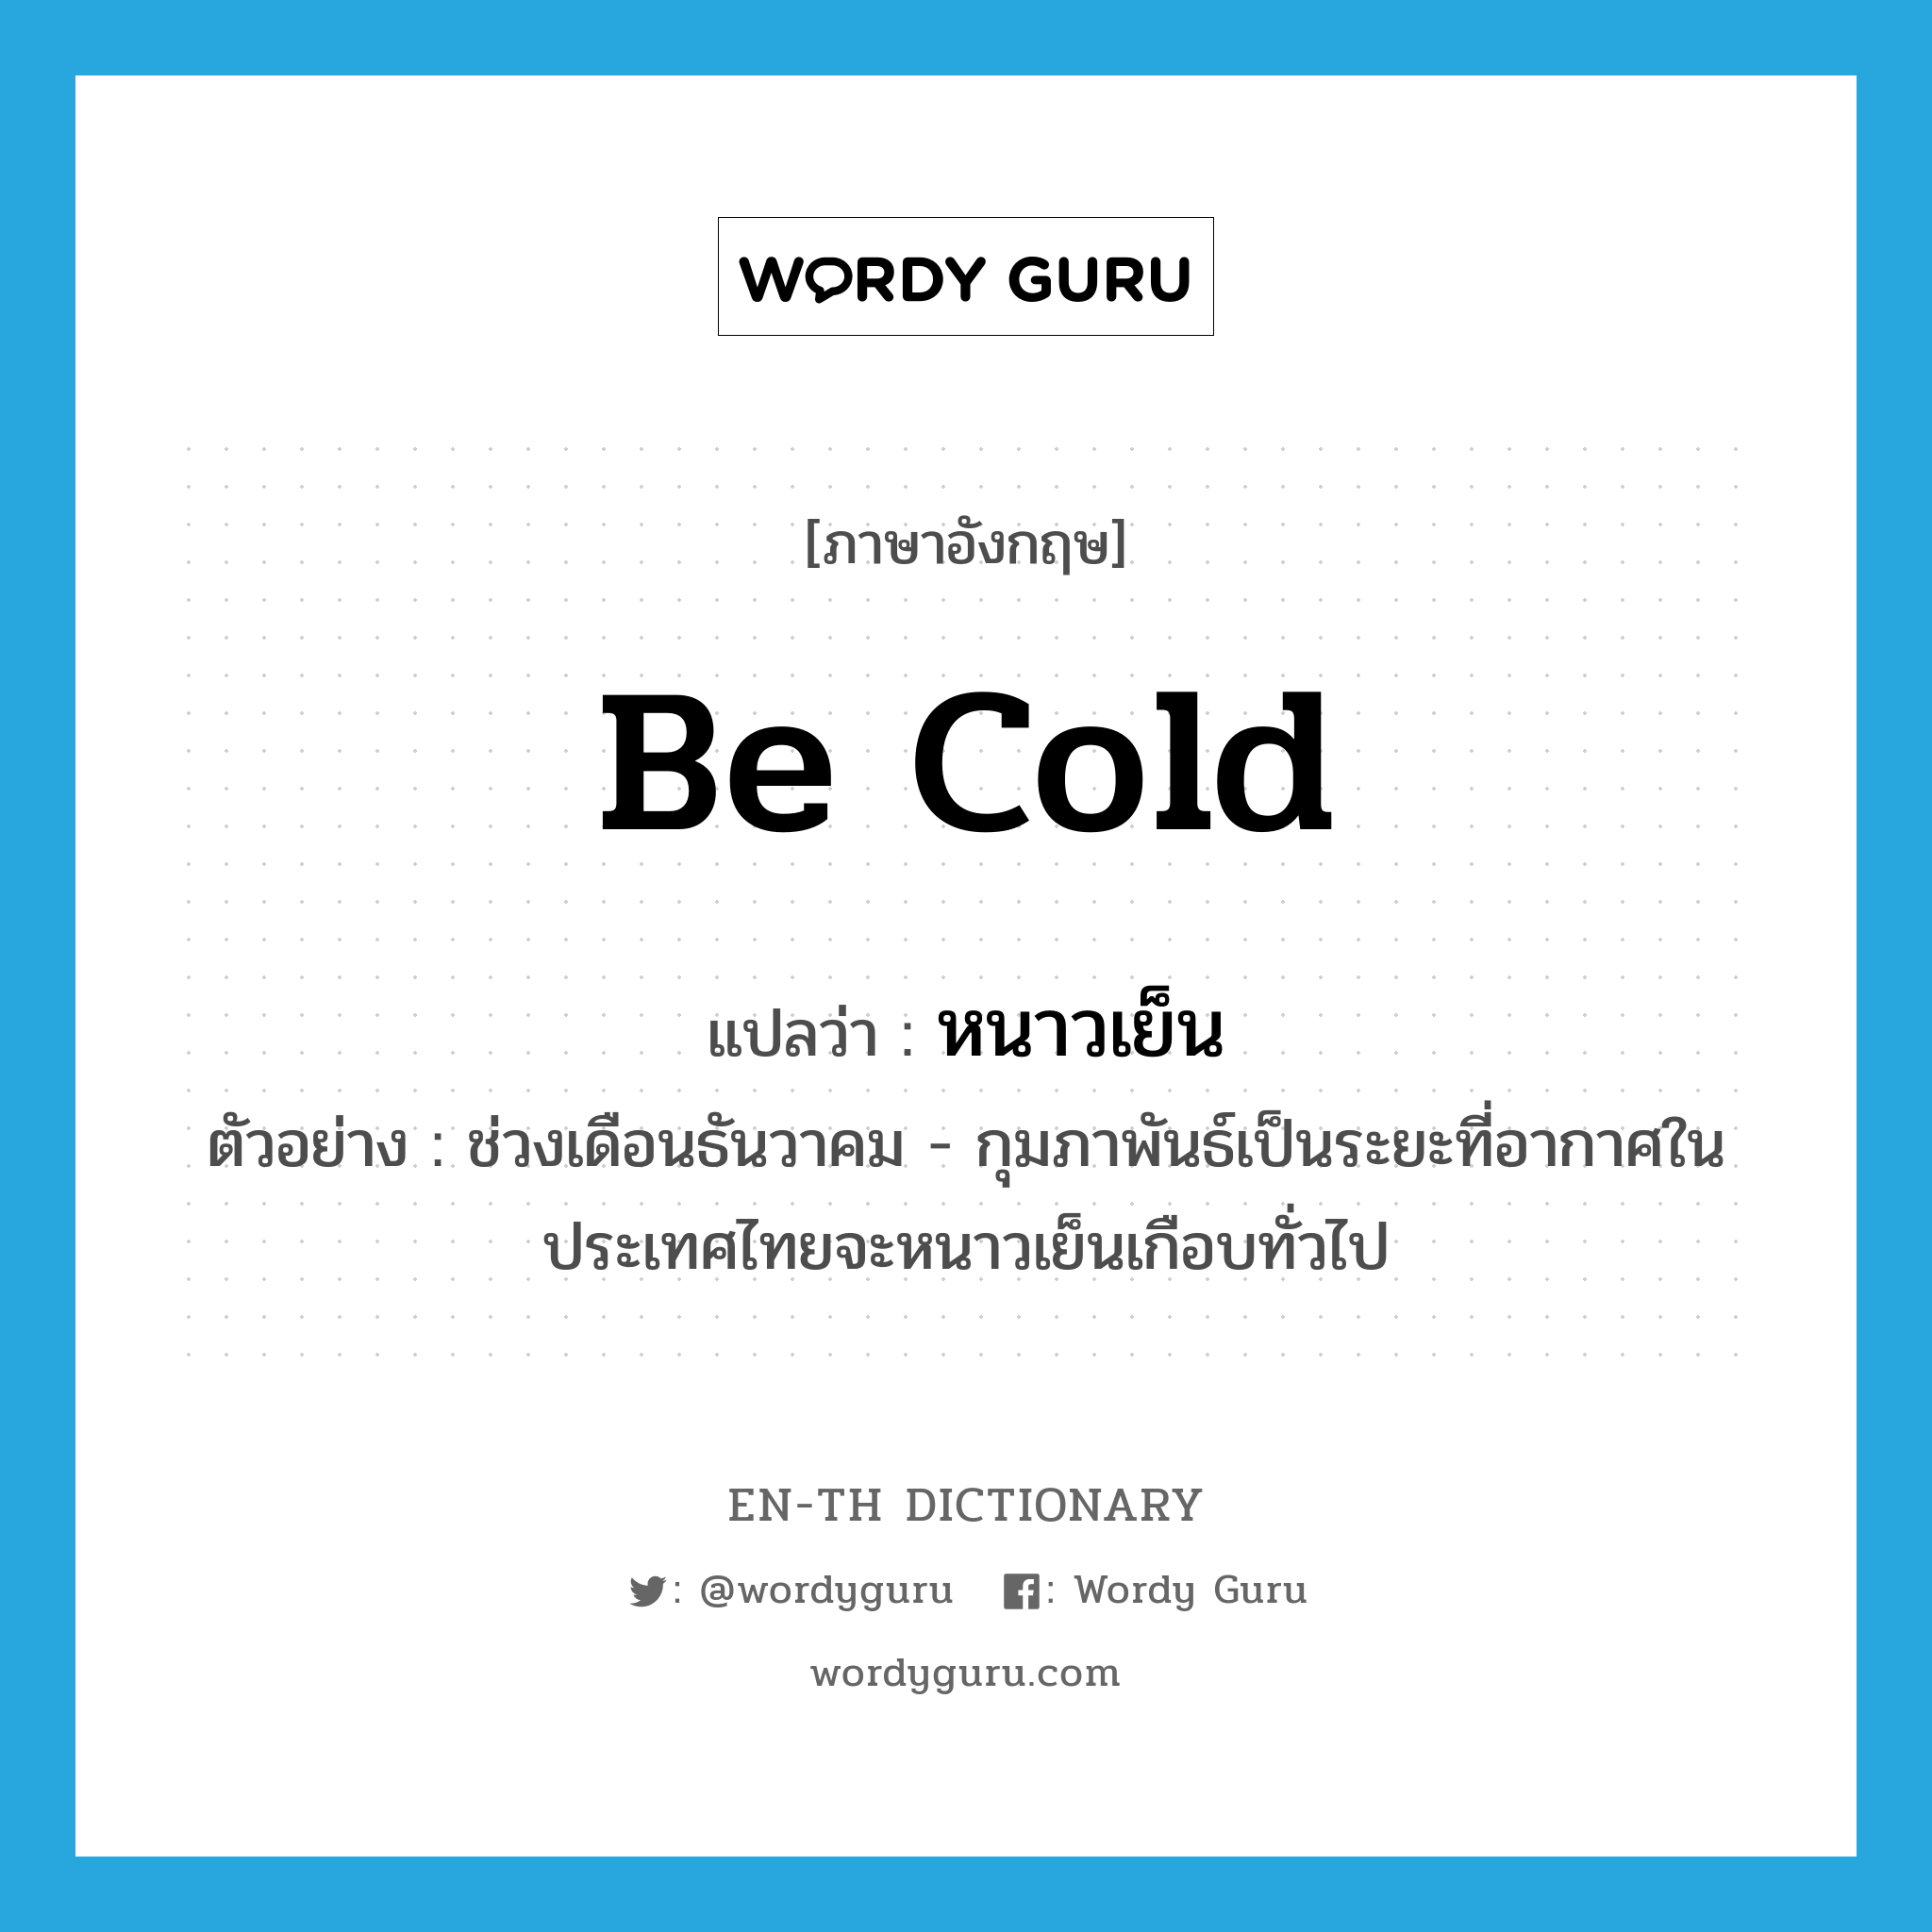 หนาวเย็น ภาษาอังกฤษ?, คำศัพท์ภาษาอังกฤษ หนาวเย็น แปลว่า be cold ประเภท V ตัวอย่าง ช่วงเดือนธันวาคม - กุมภาพันธ์เป็นระยะที่อากาศในประเทศไทยจะหนาวเย็นเกือบทั่วไป หมวด V